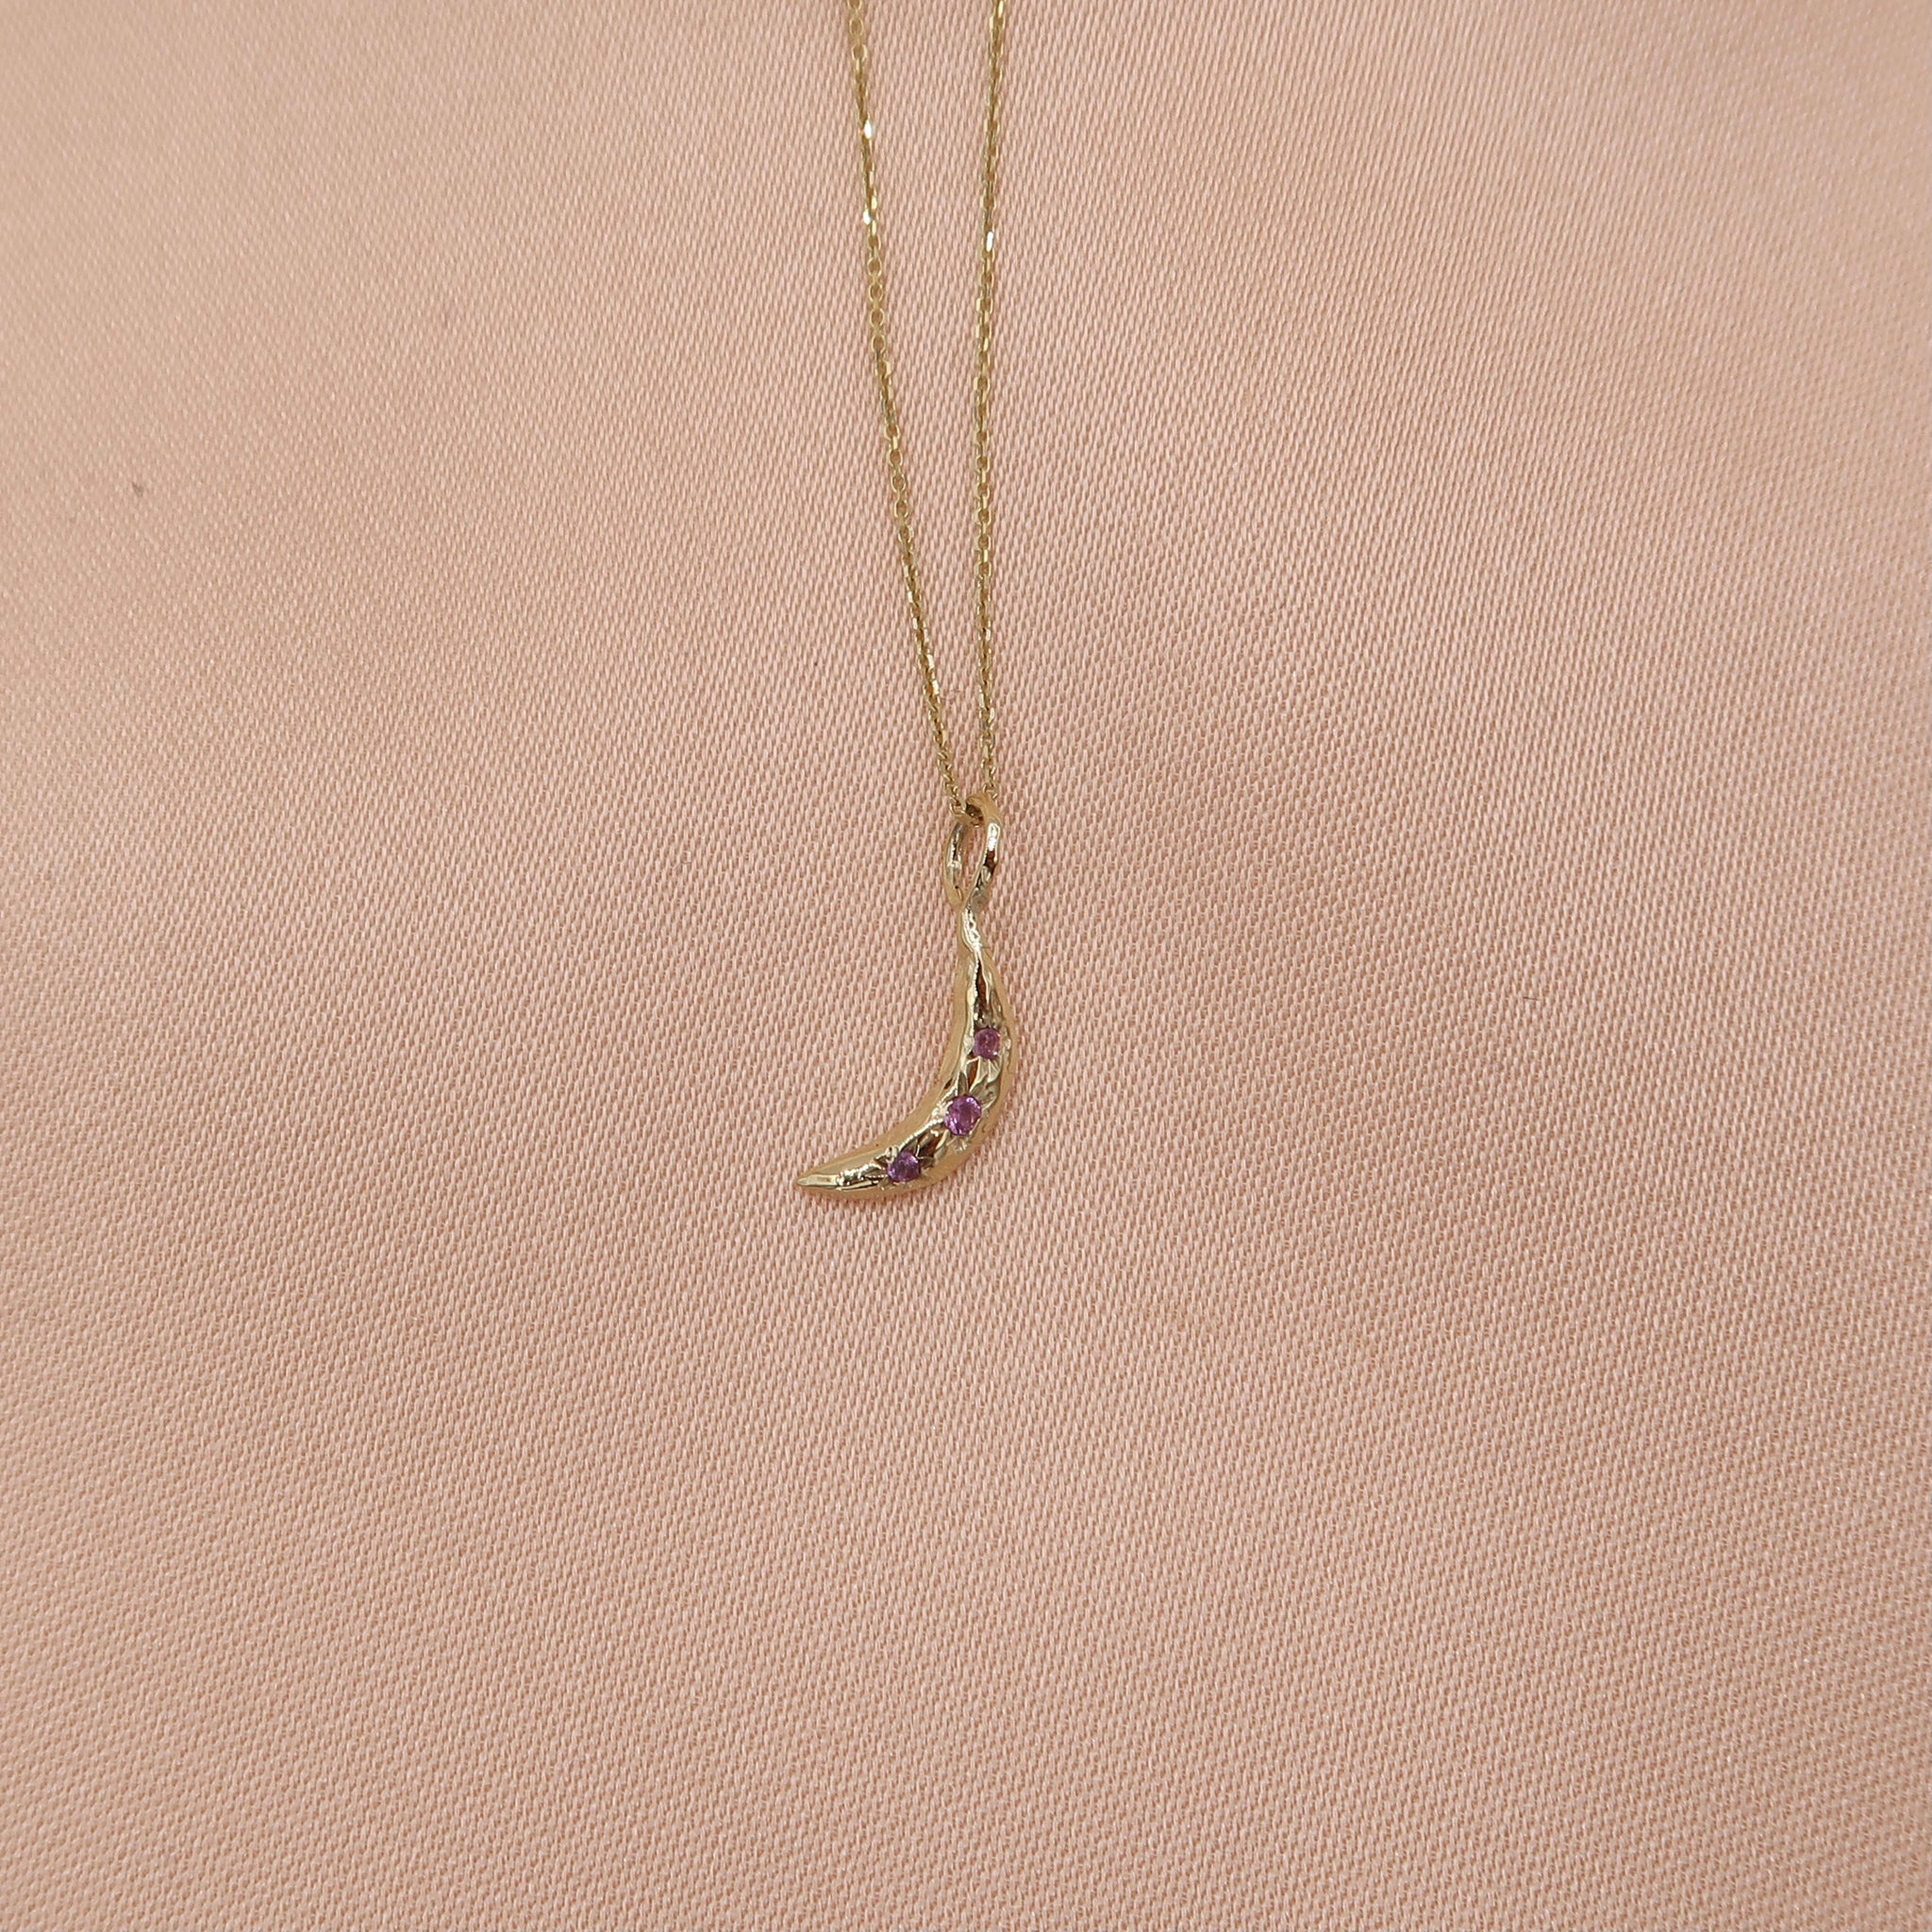 Mini Crescent Moon Necklace - Sam Tsia